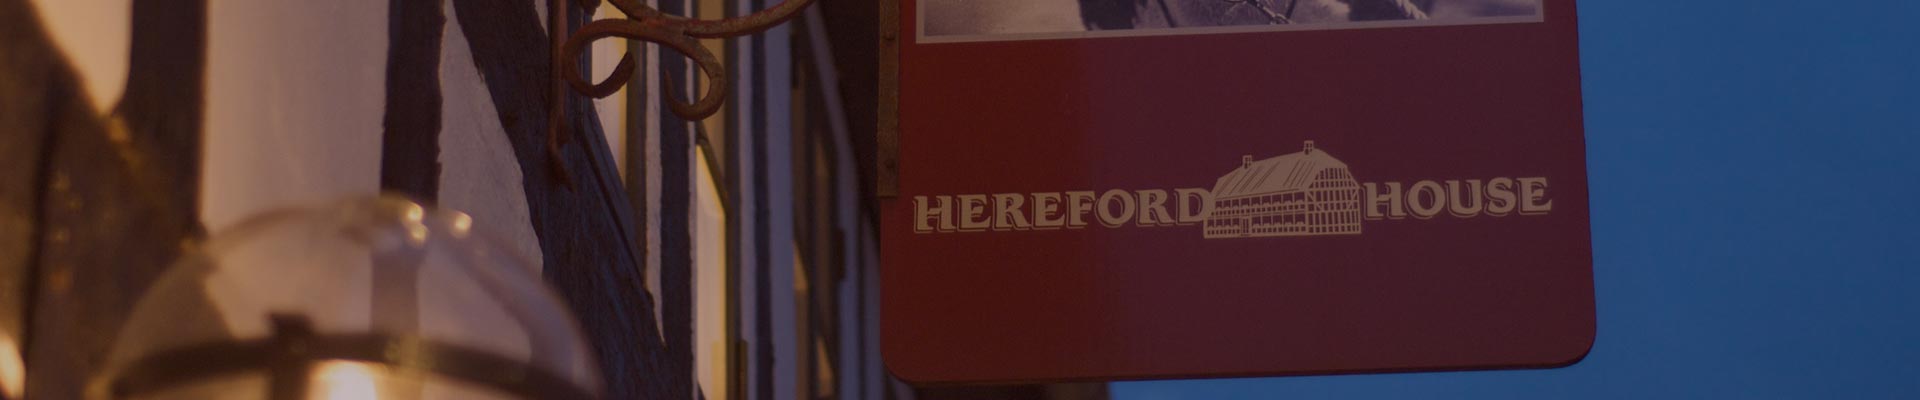 restaurant-hereford-house-hjoerring-1.jpg